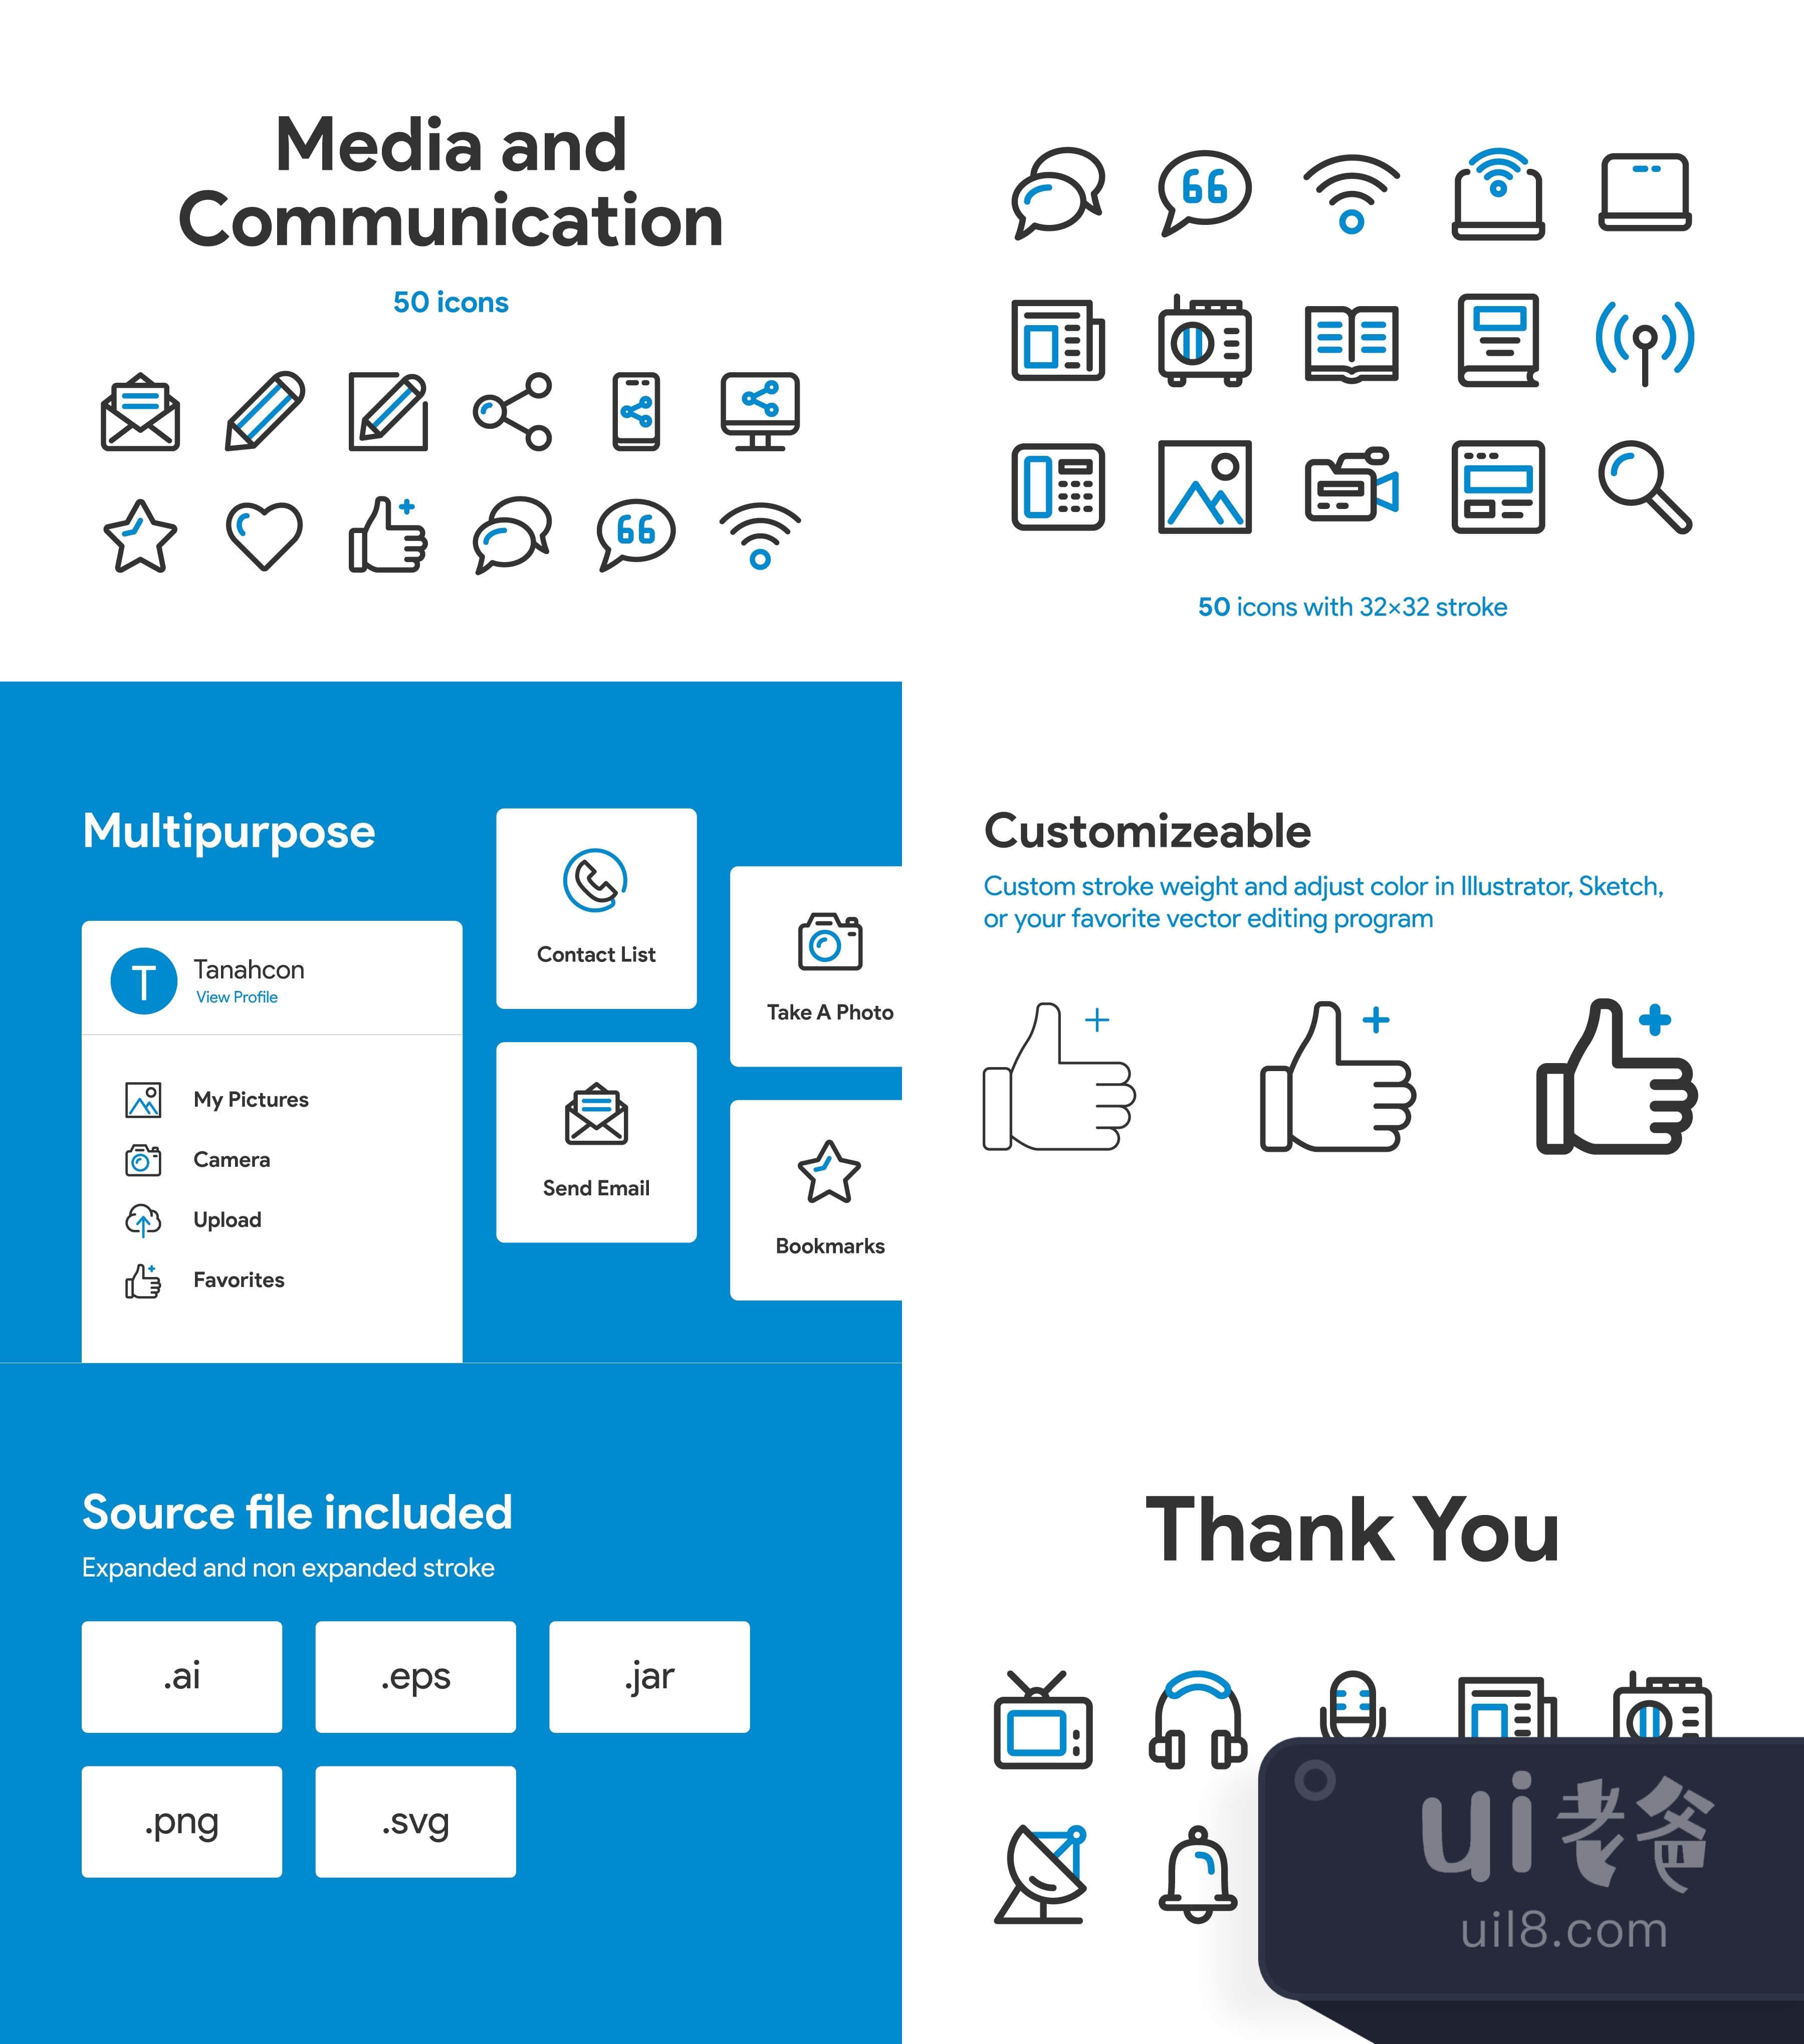 媒体和通信图标集 (Media and Communication Icon Set)插图